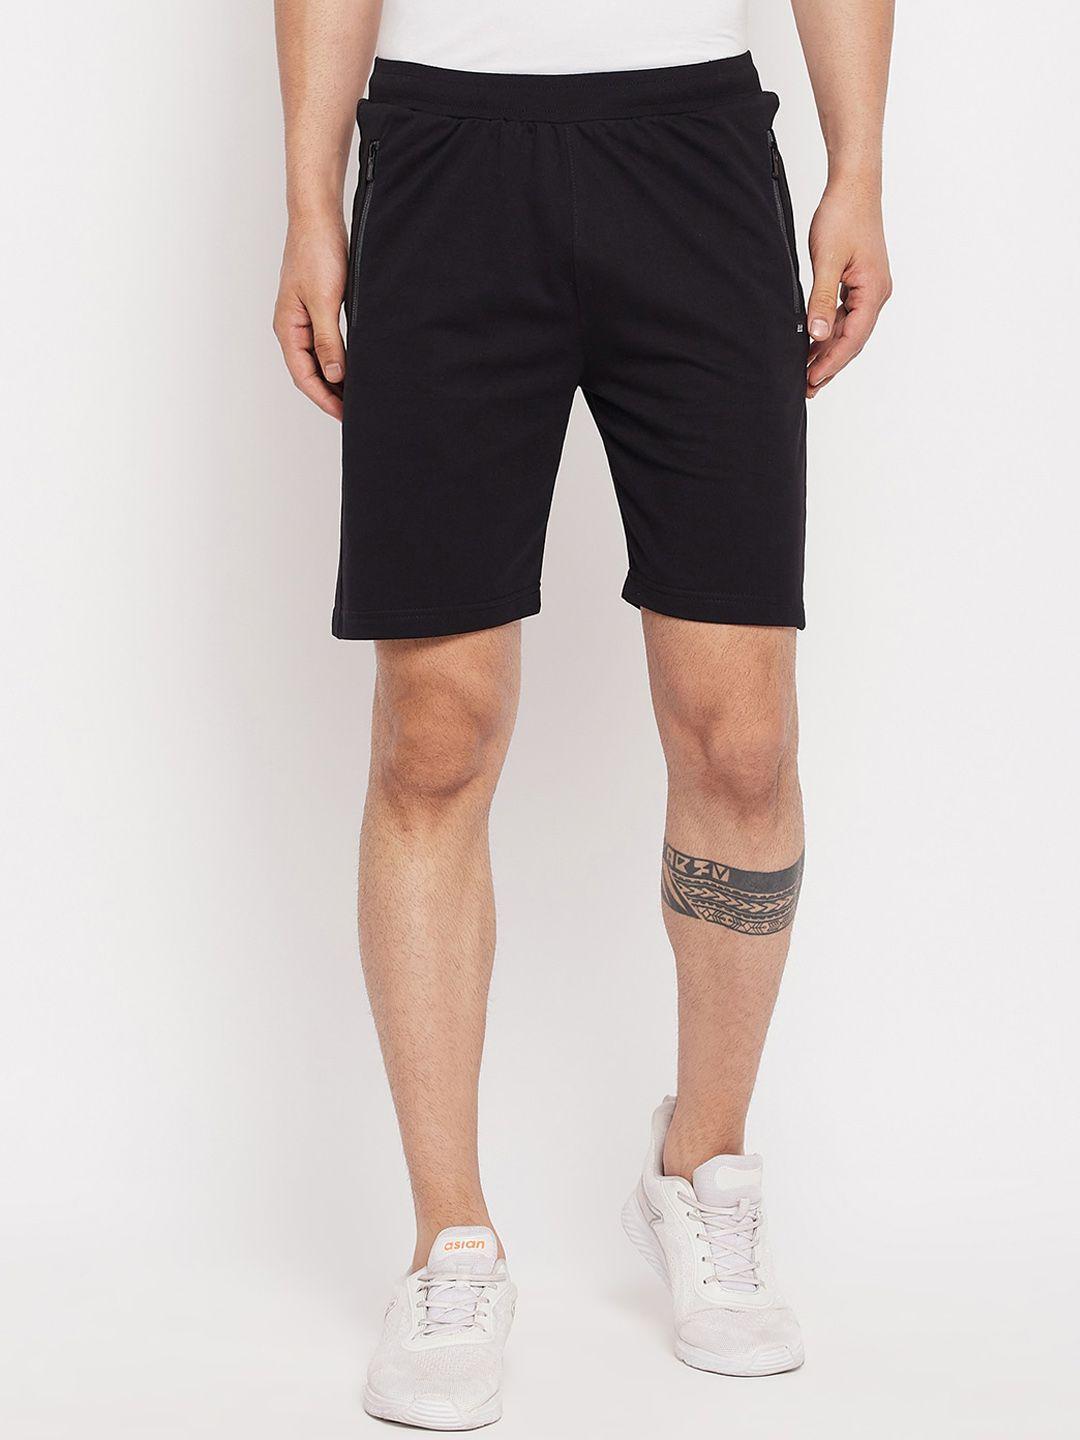 okane-men-mid-rise-sports-shorts